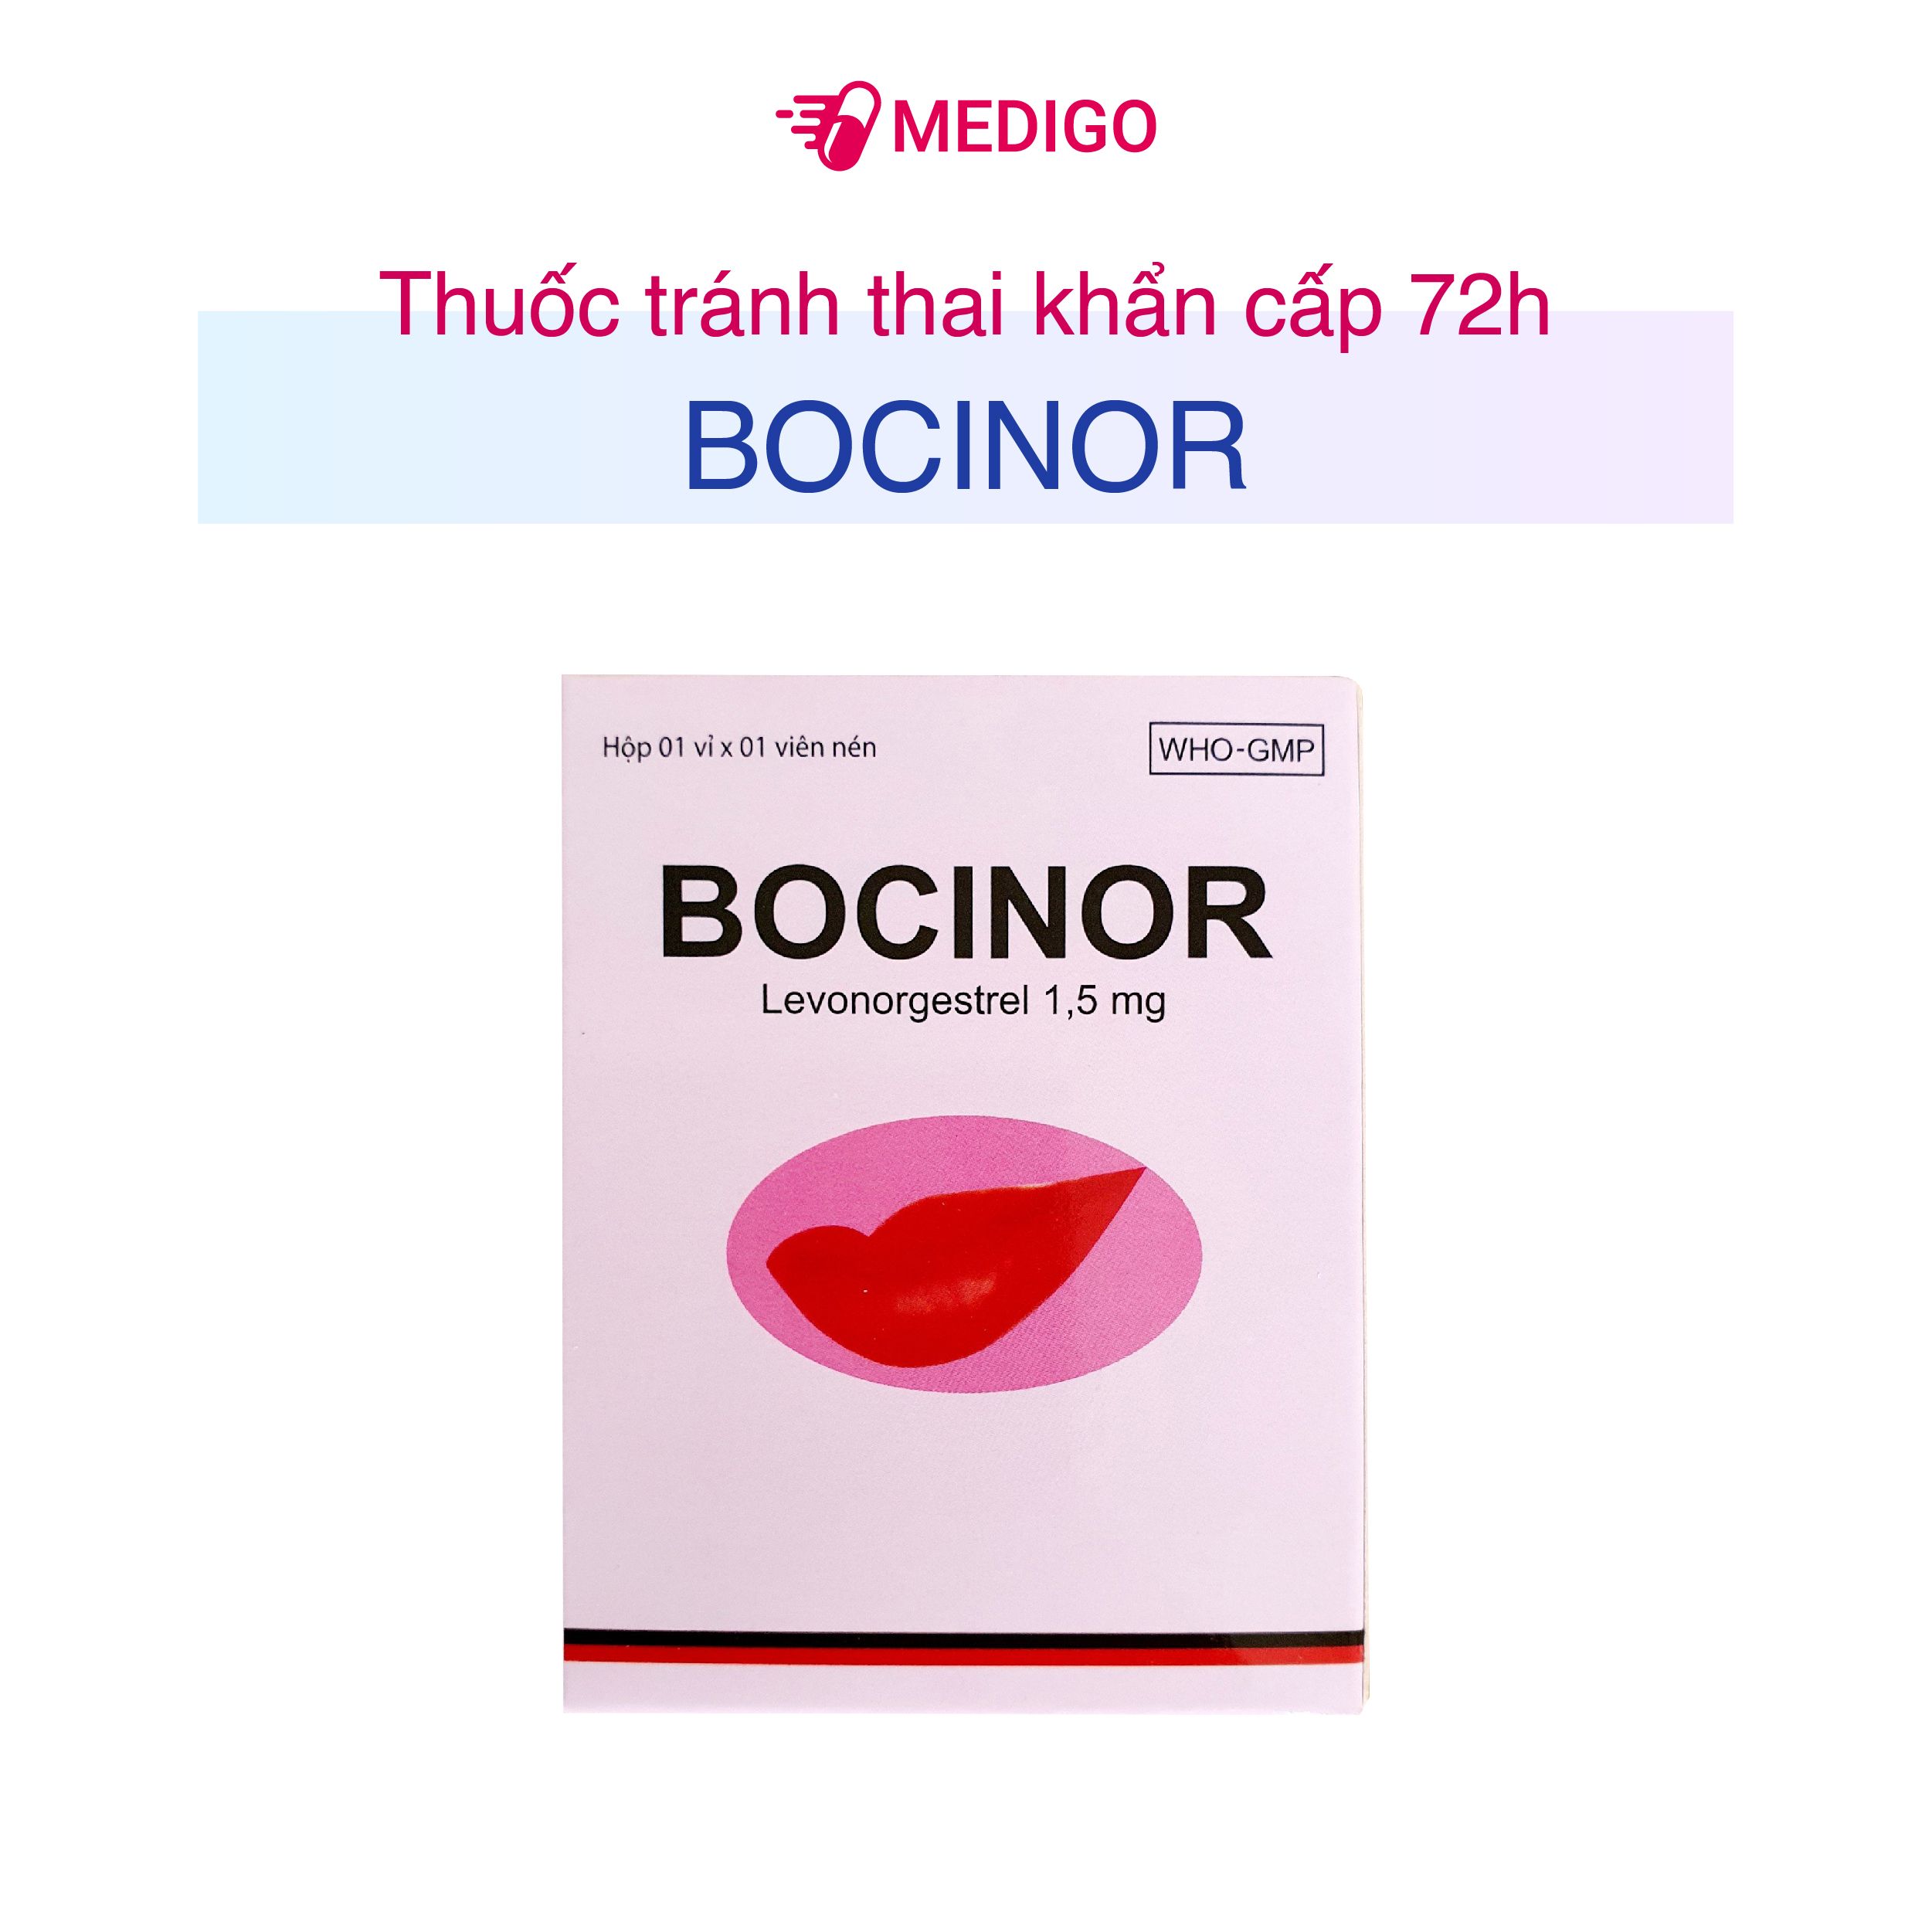 Thuốc tránh thai khẩn cấp 72h Bocinor: Lựa chọn an toàn cho phụ nữ